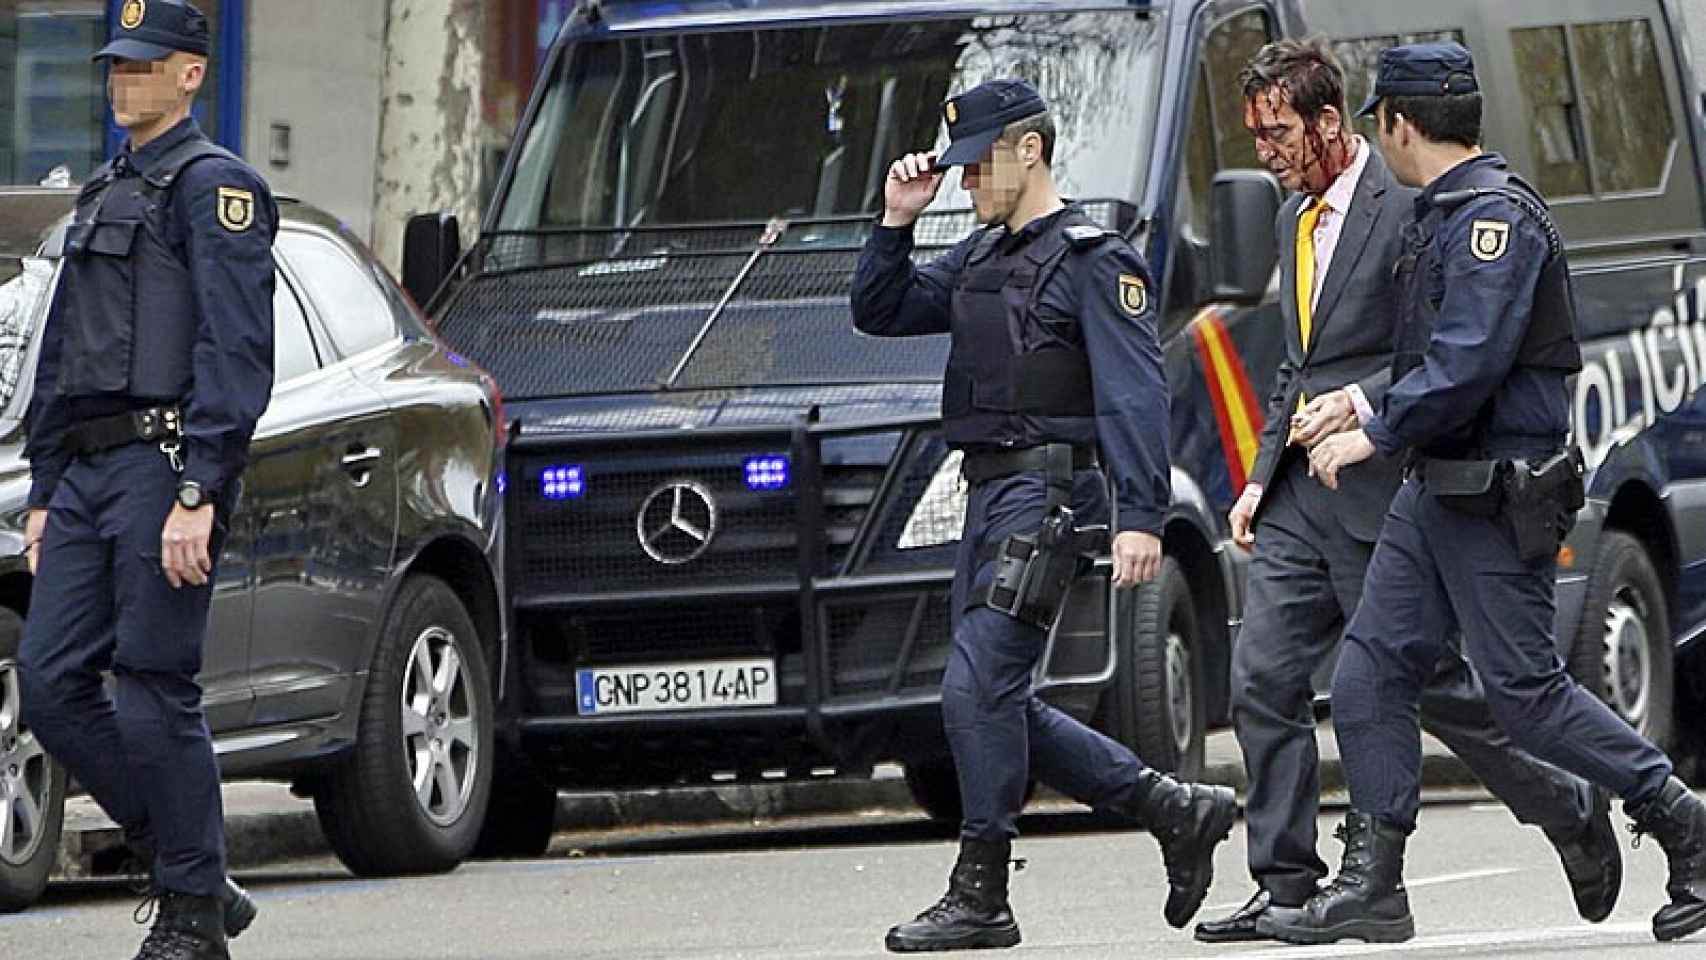 Agentes de los GEO acompañan a un hombre herido durante el atraco con rehenes en la avenida del Mediterráneo de Madrid.